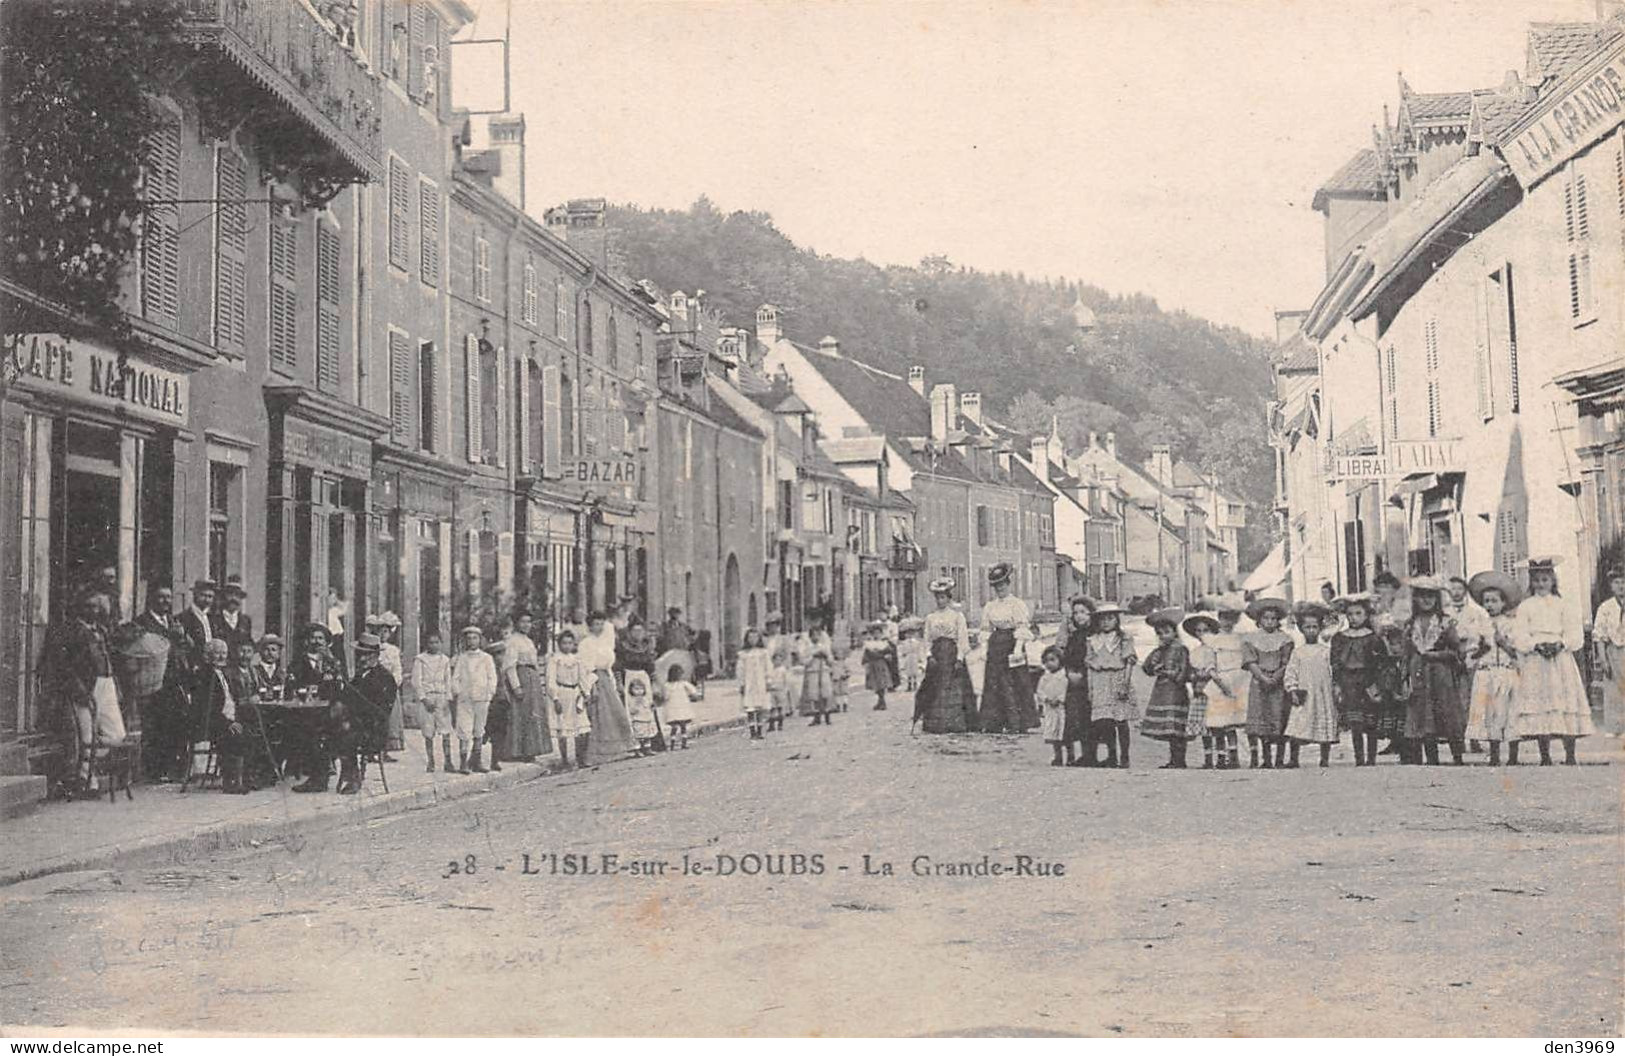 L'ISLE-sur-le-DOUBS (Doubs) - La Grande Rue - Café National - Tirage N&B - Isle Sur Le Doubs